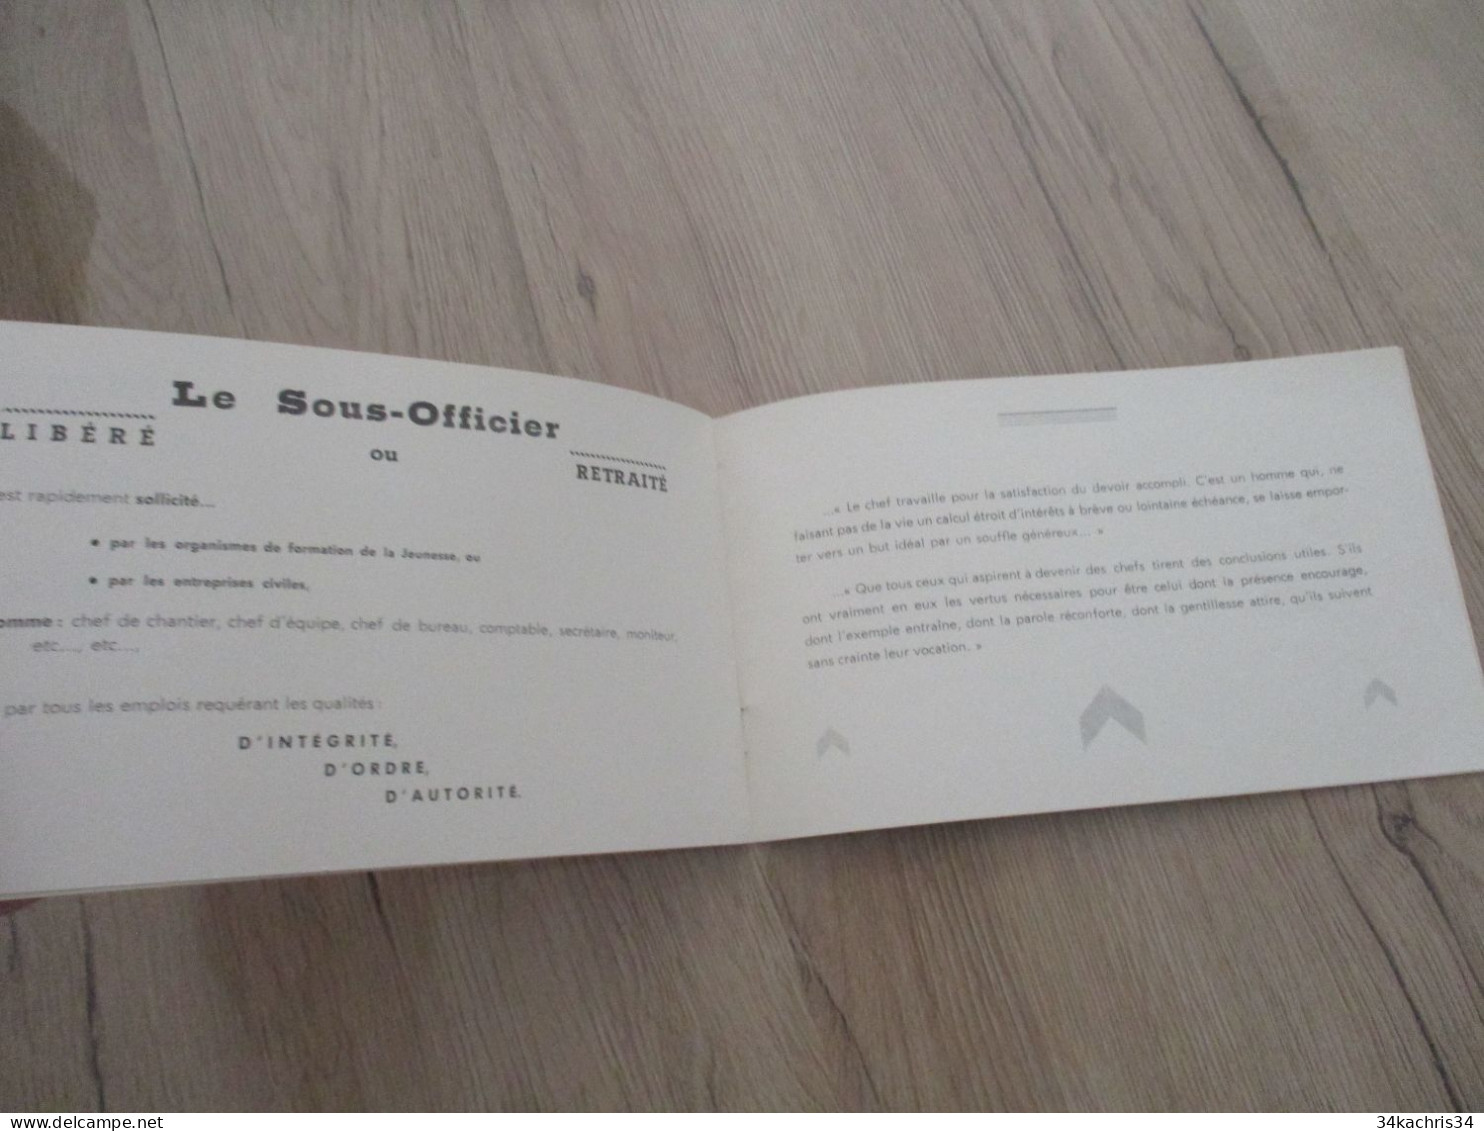 Catalogue Propagande militaire pour le recrutement de sous officiers 1958 imprimerie de l'E.A.I.